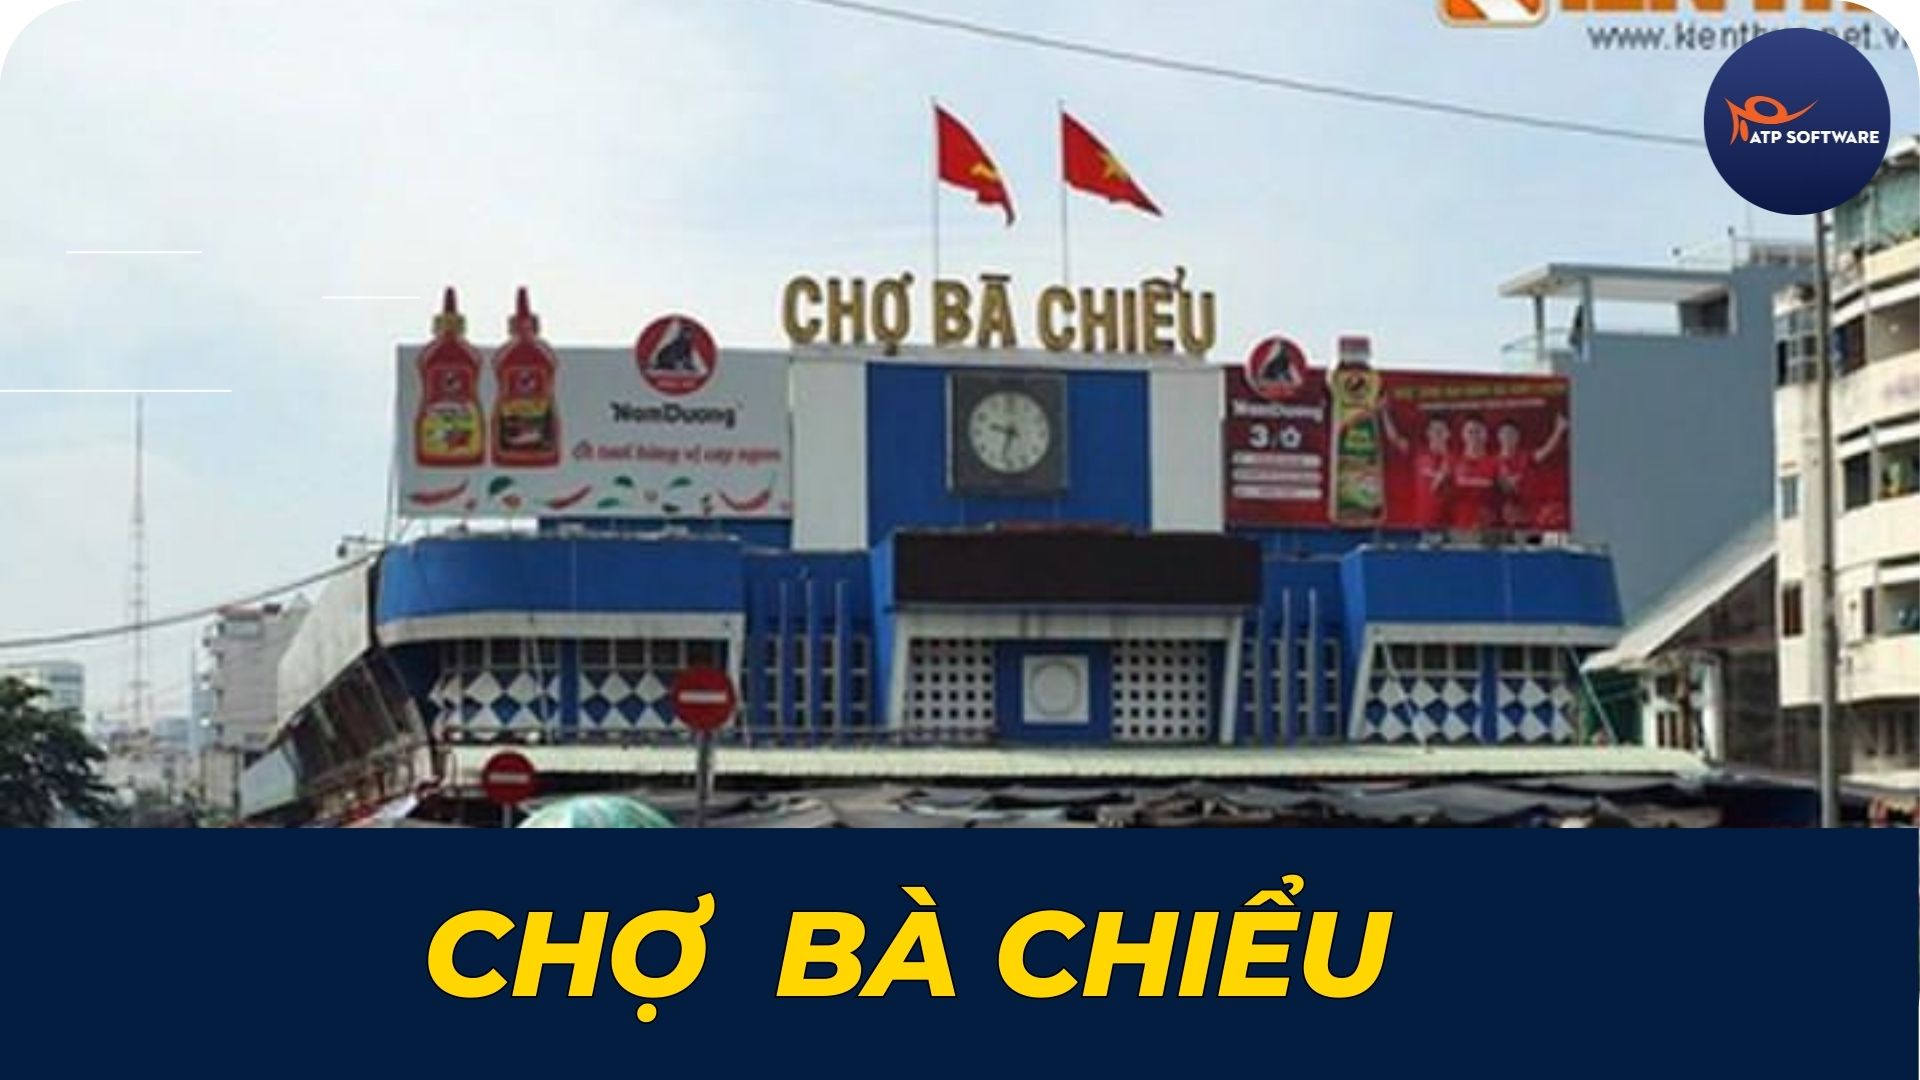 cho-ba-chieu-review-12